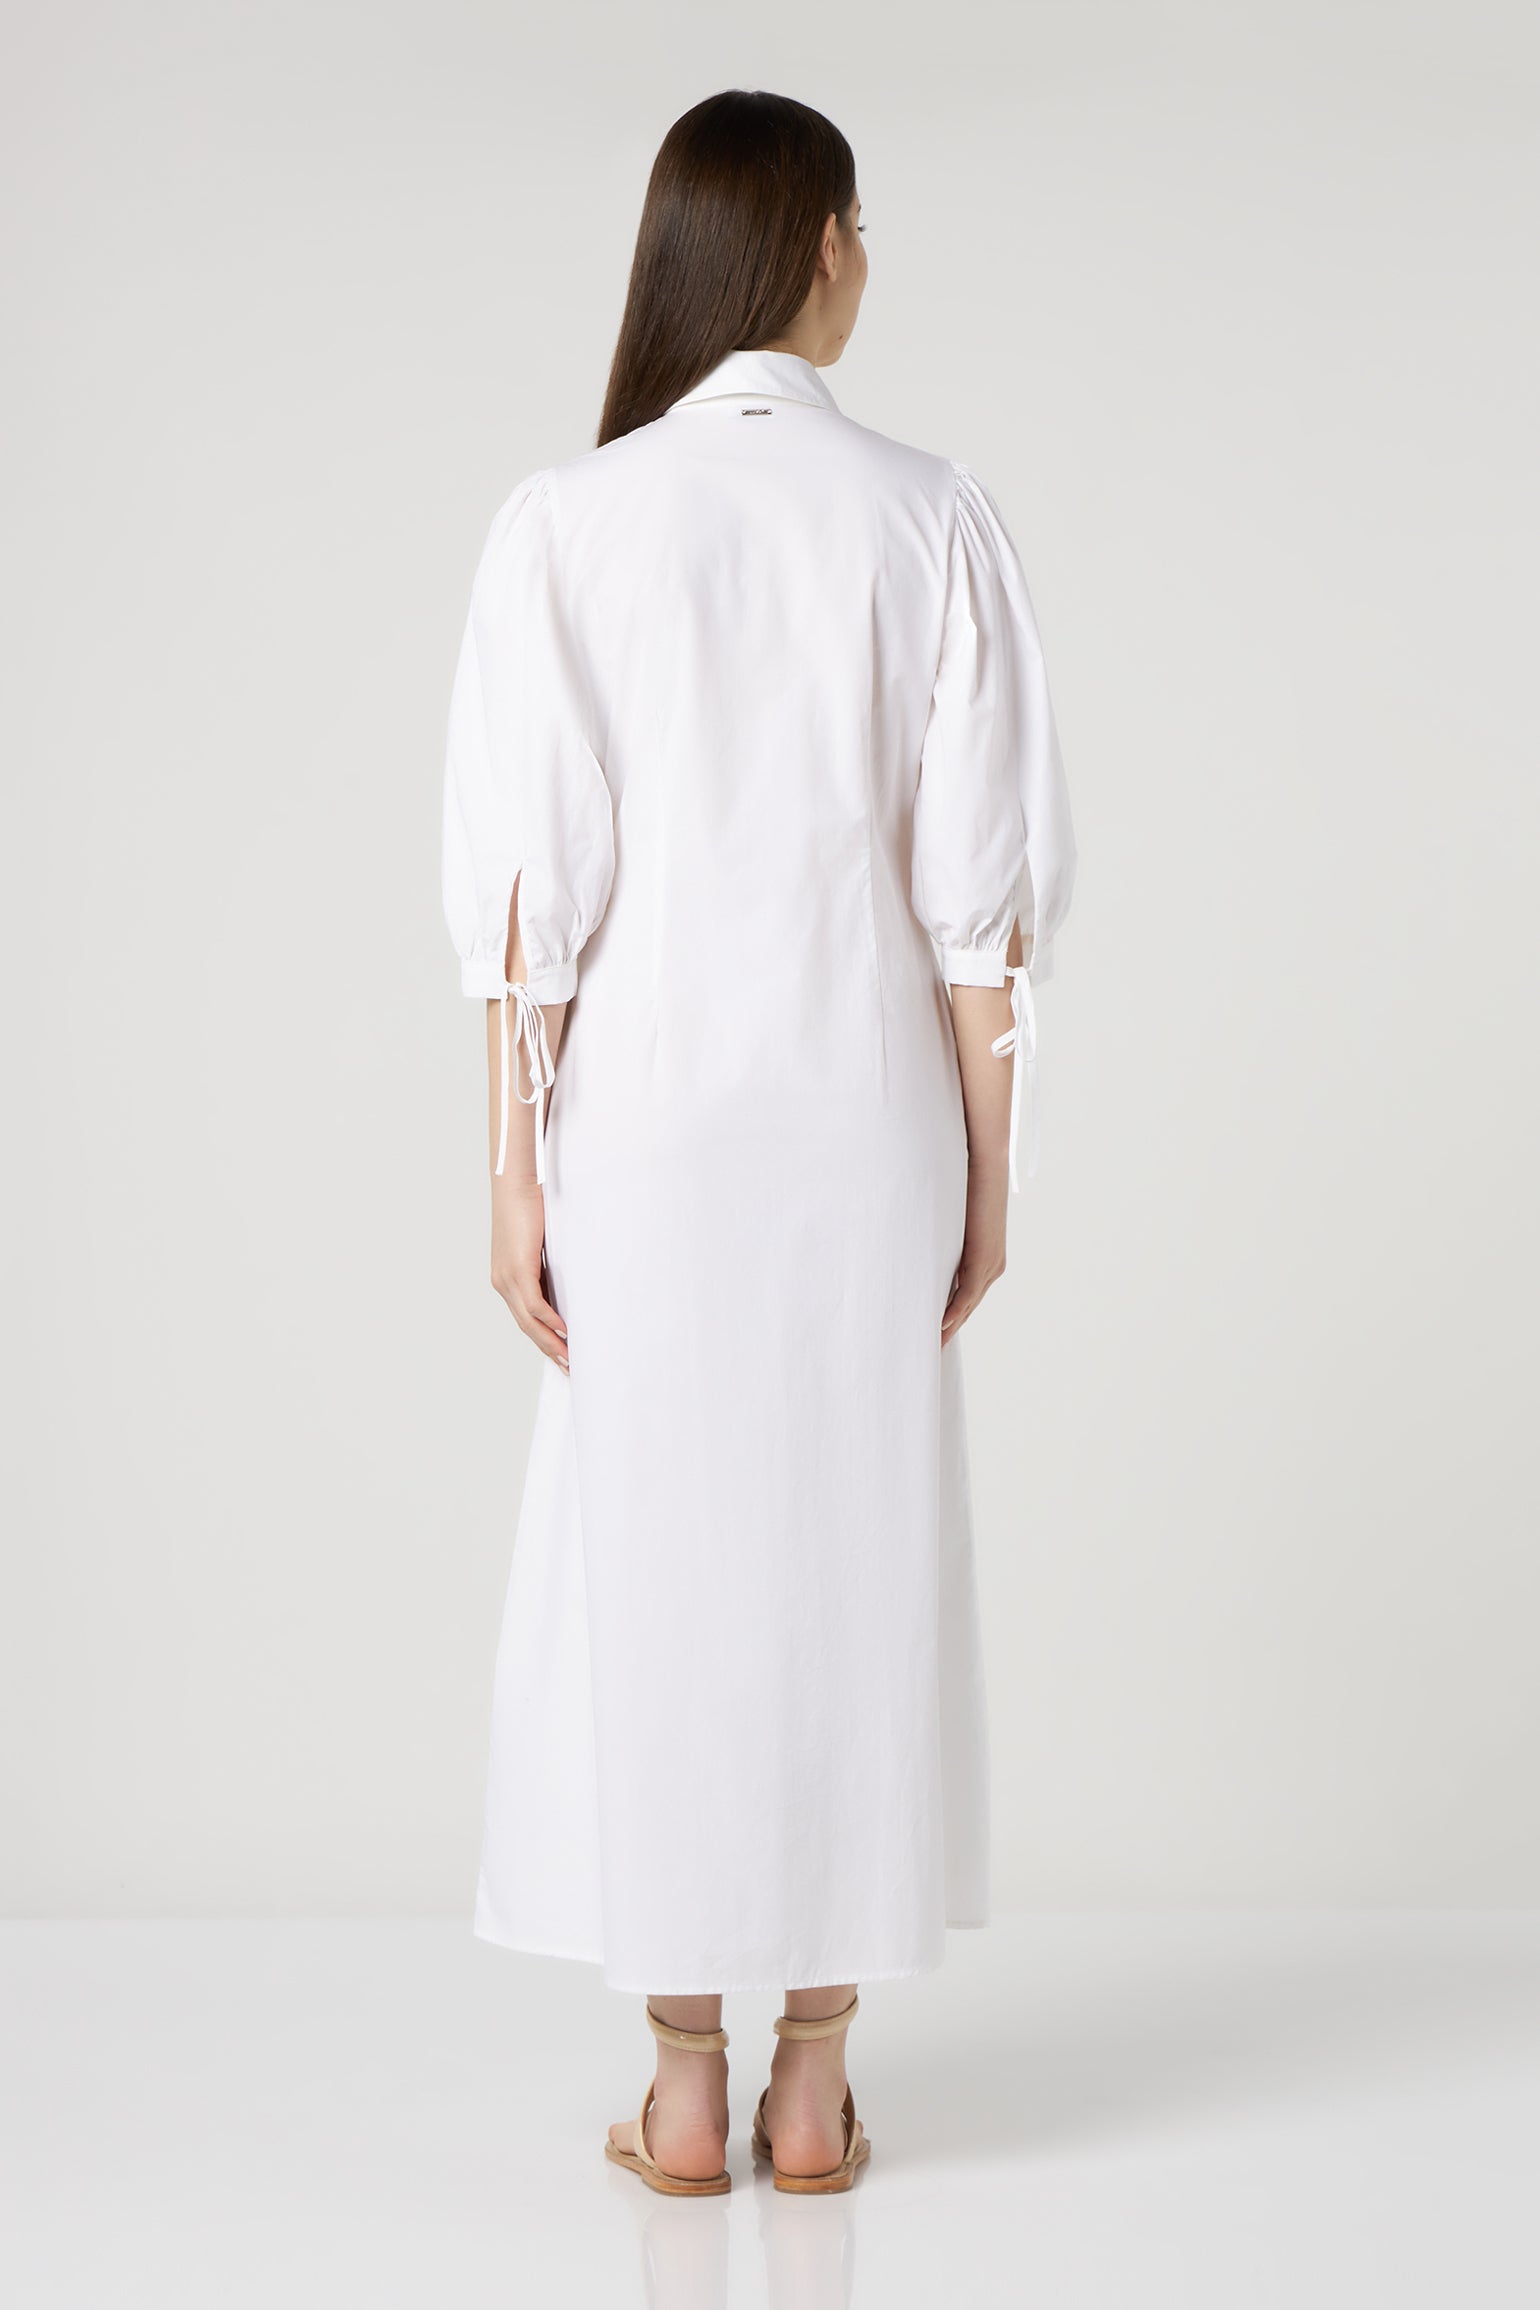 LIU JO Langes Kleid aus weißer Popeline